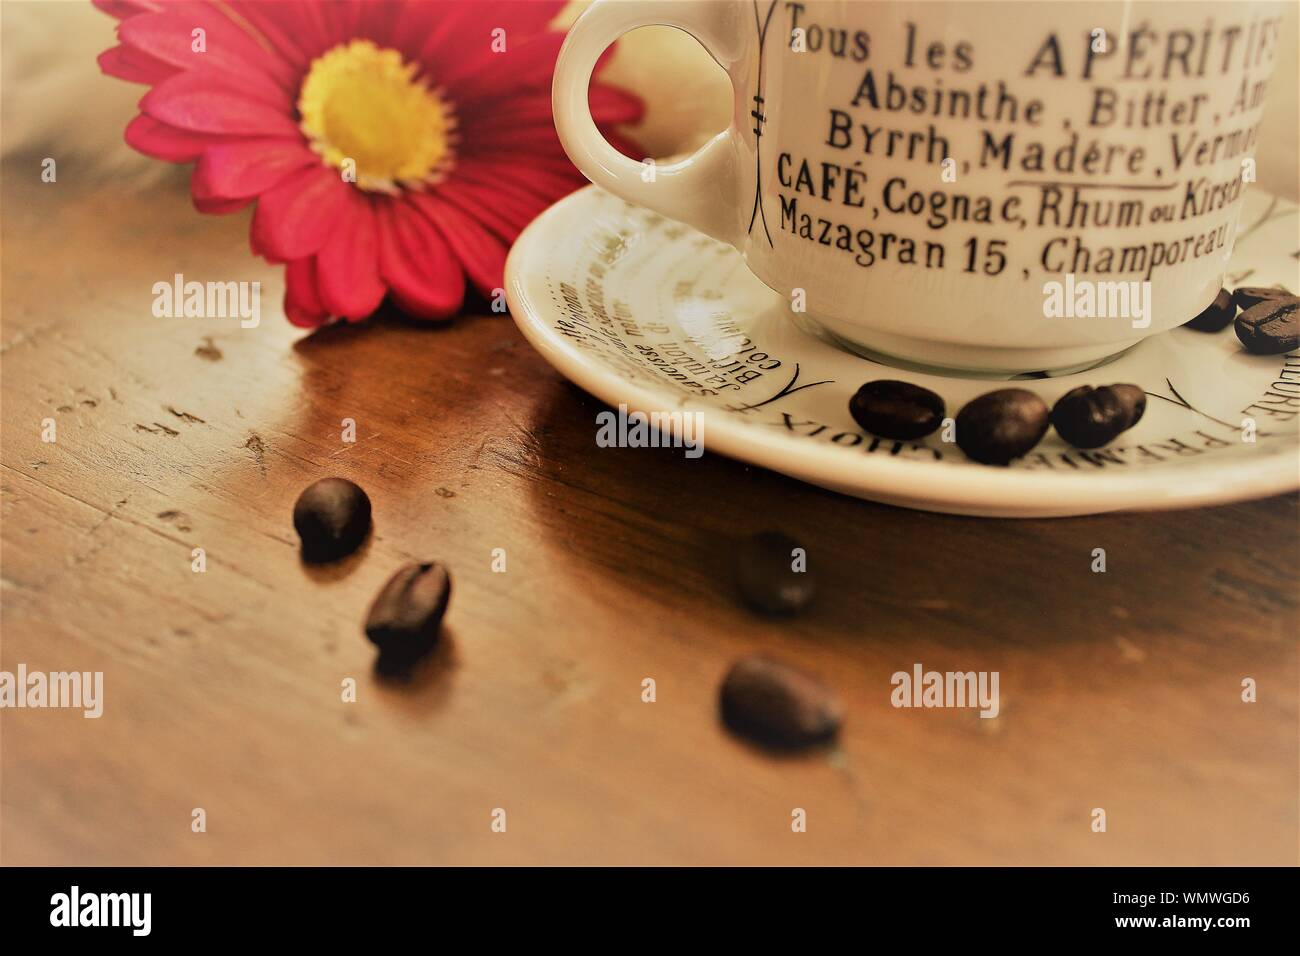 Eine kleine weiße Tasse mit Aperitifs in französischer Sprache aufgeführt ist, auf einen hölzernen Tisch, mit Kaffeebohnen und eine rosa Blume neben ihm. Stockfoto